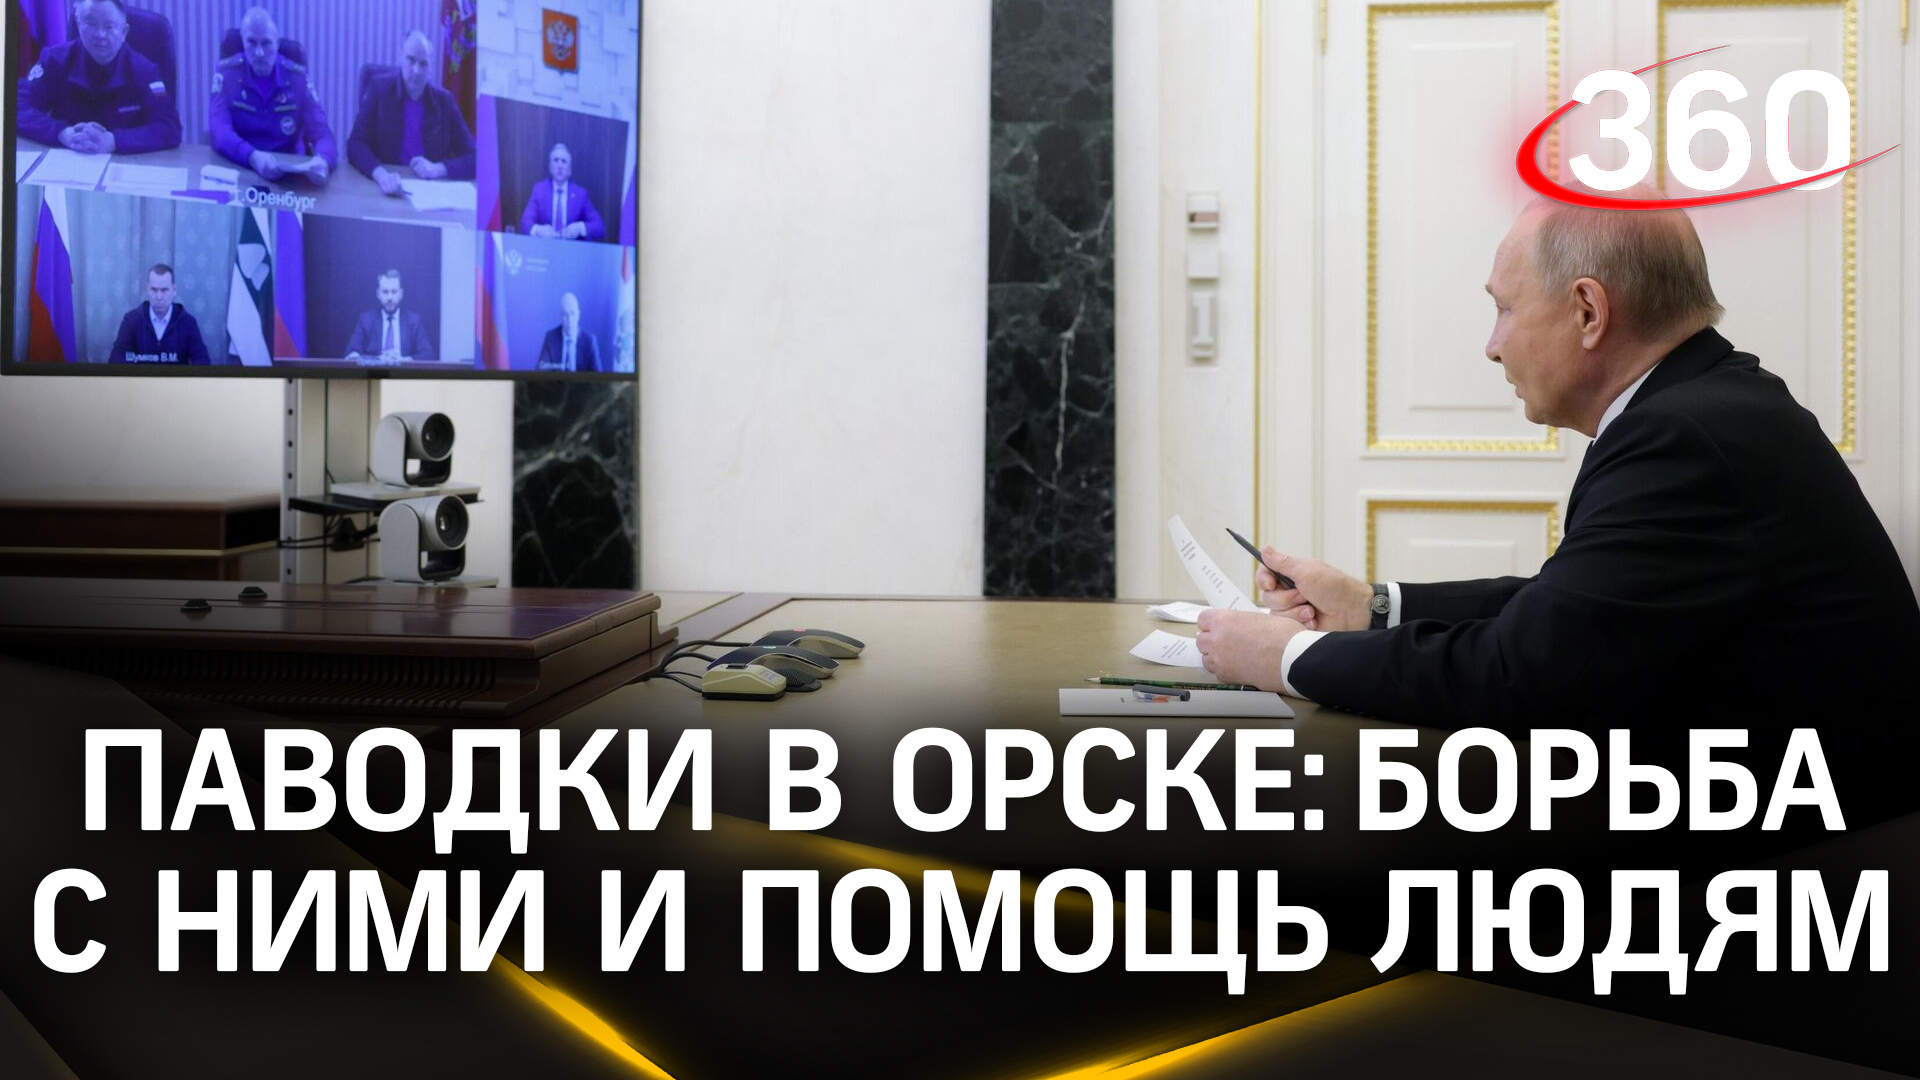 Путин: «не тяните! Тогда терзать не буду». Президенту доложили о потопе за Уралом